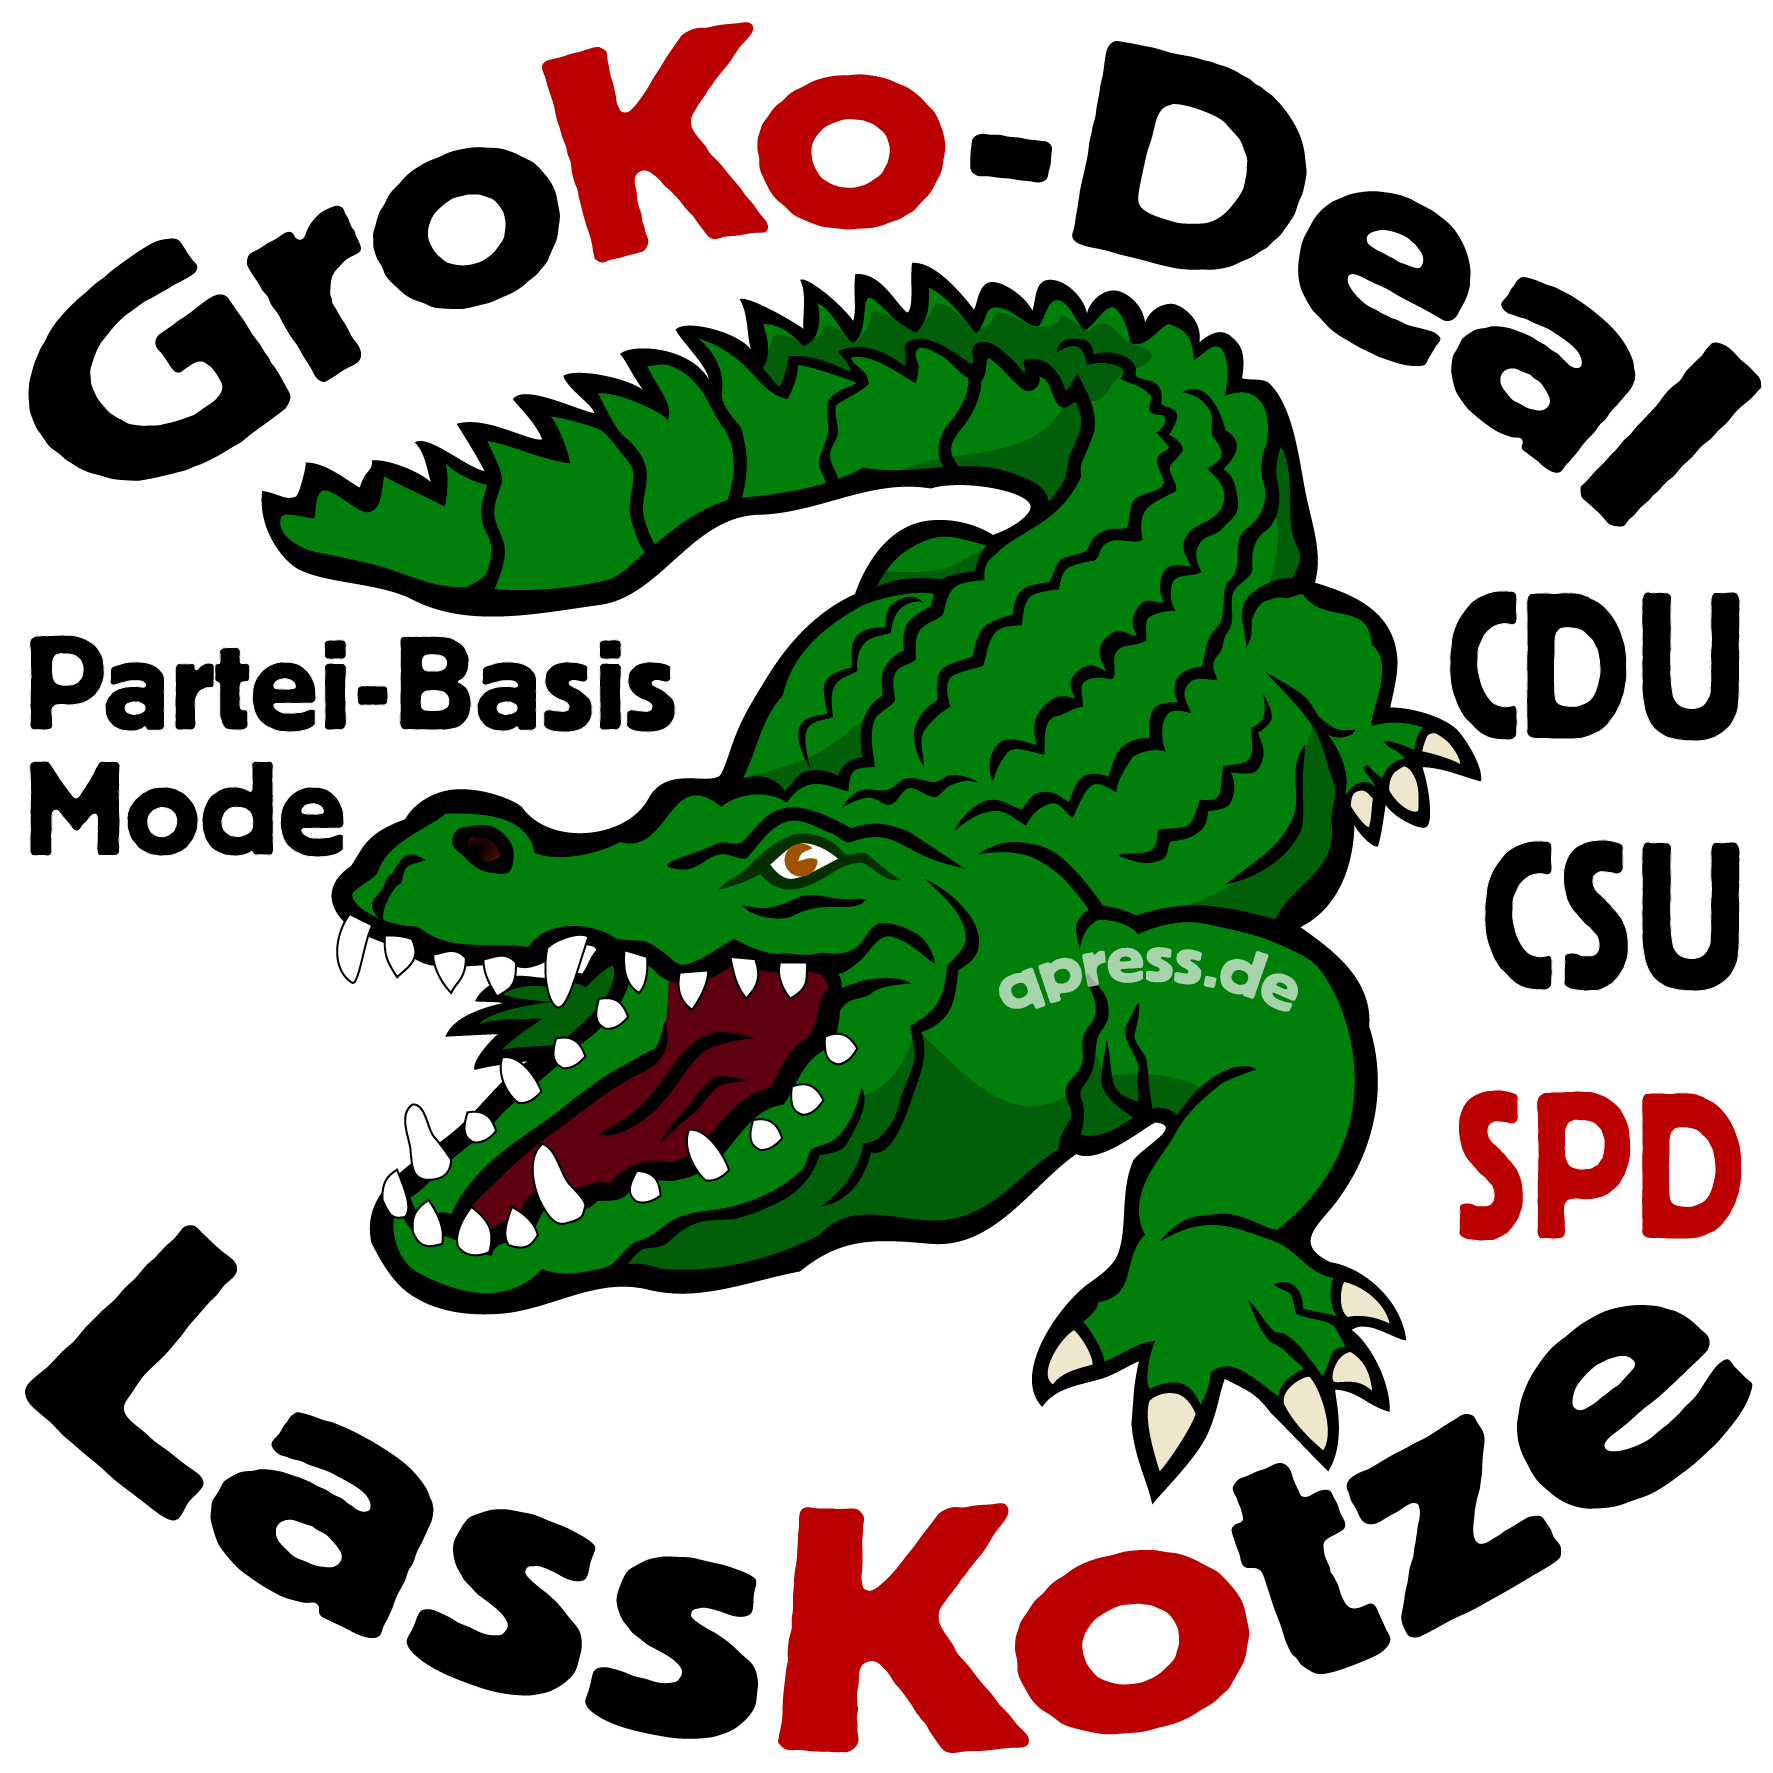 GroKo-Deal LassKotze Partei-Basis Mode CDU CSU SPD qpress